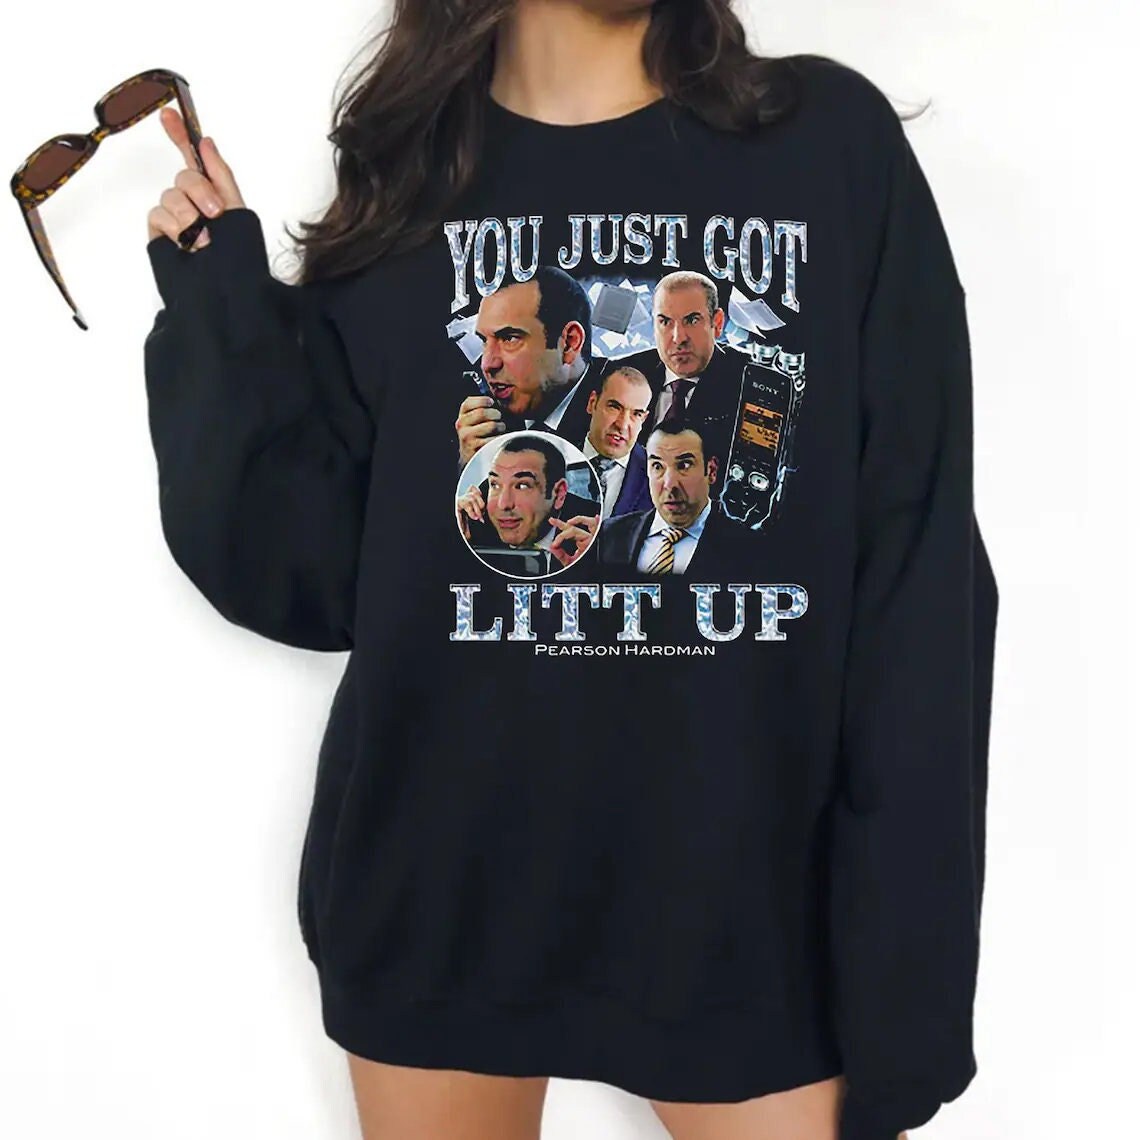 Louis Litt you just got Litt up shirt, hoodie, sweater and long sleeve